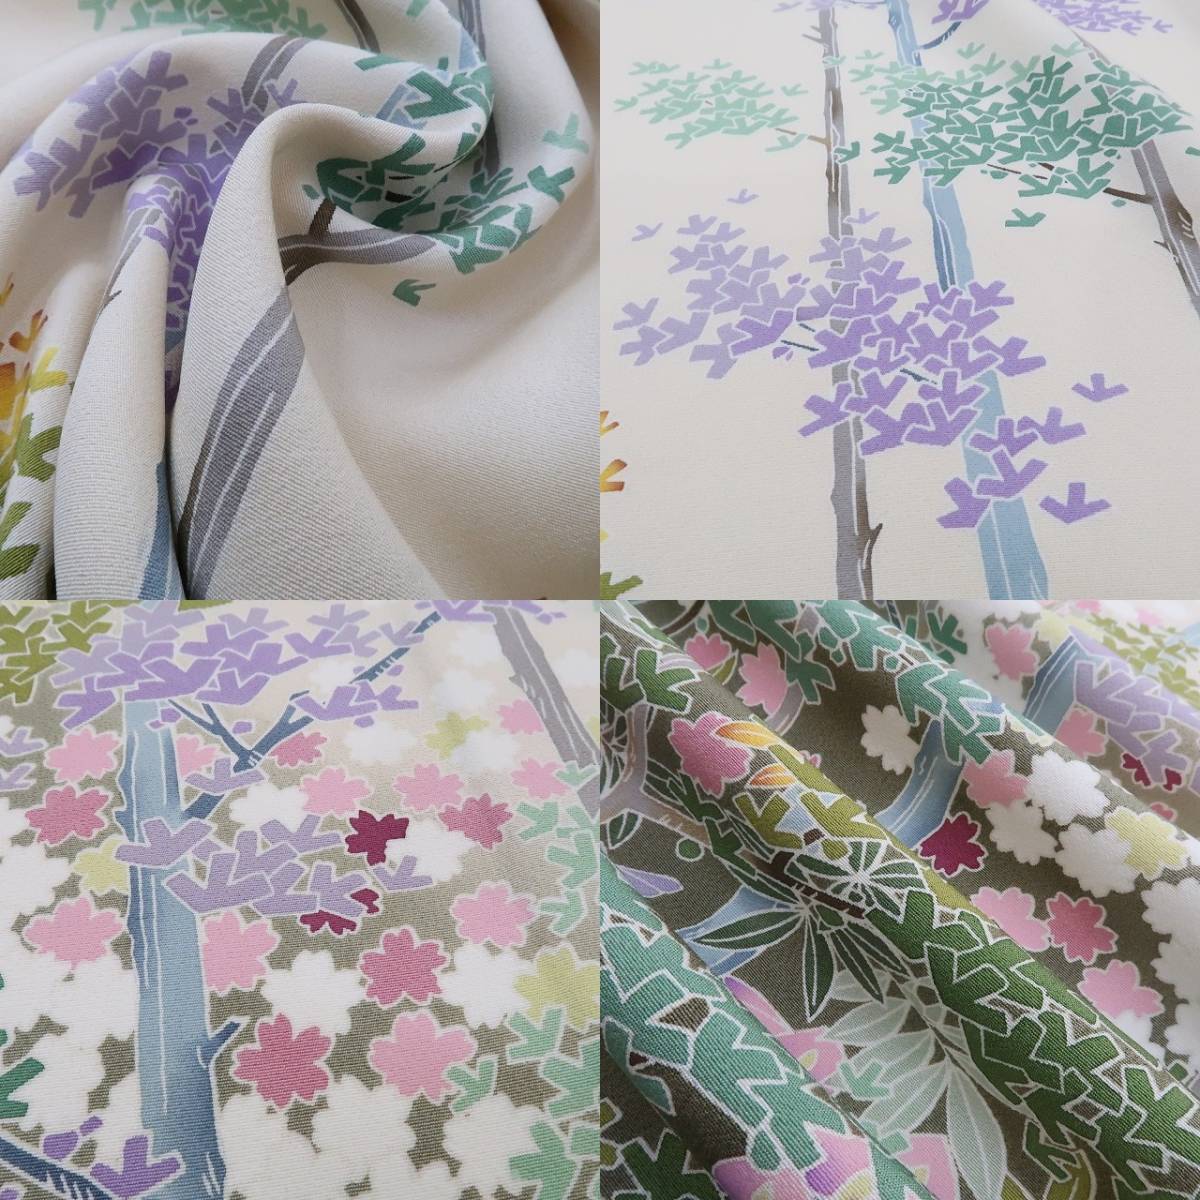 yu.saku2 новый товар. .. магазин качественный продукт рука .... автор предмет .. кимоно . установка нить есть *.. как цветок открывать Sakura . глициния бамбук . весна день .. как хороший сезон ~ выходной костюм 2868